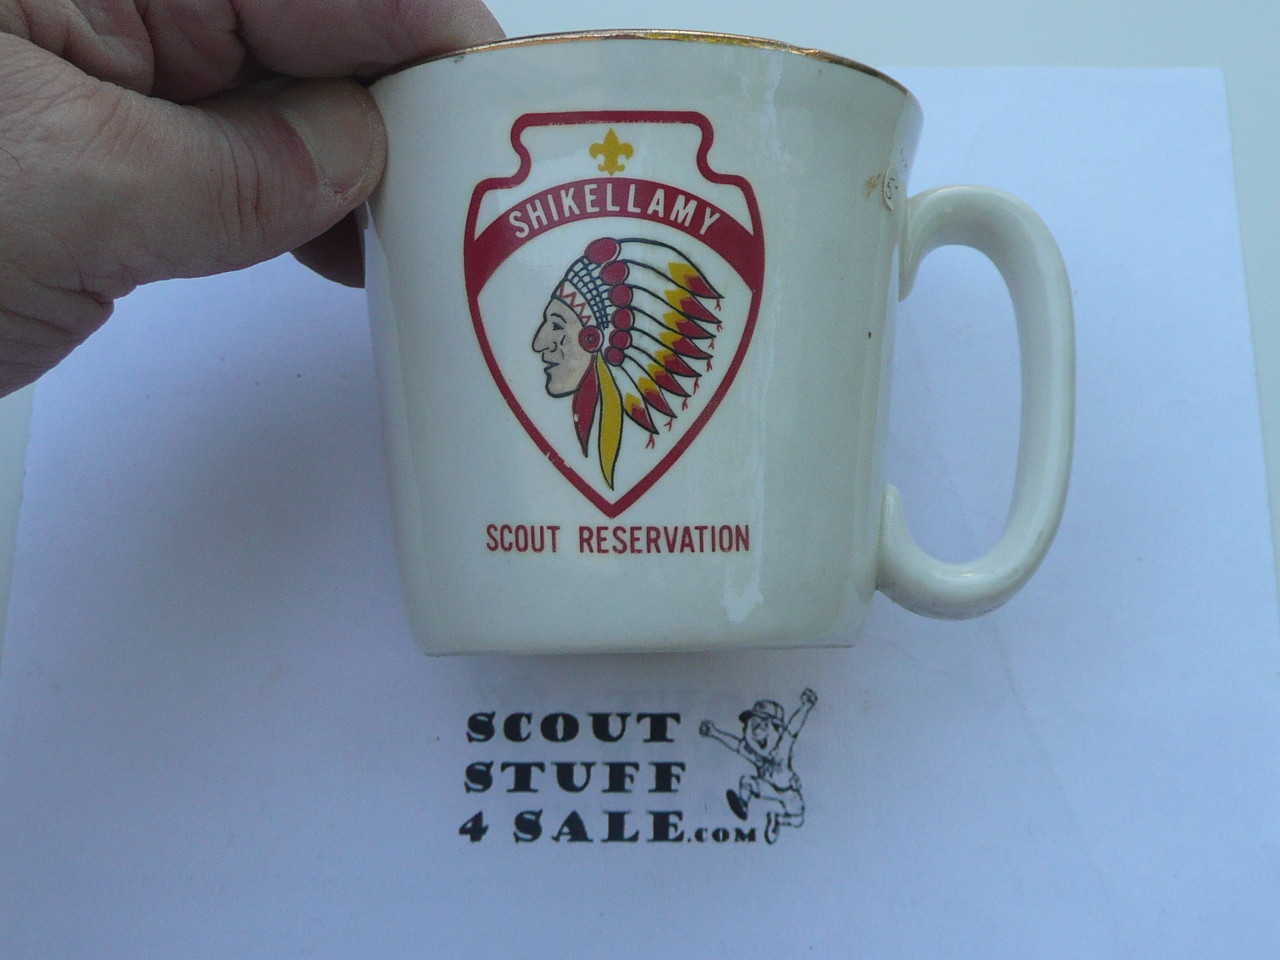 Shikellamy Scout Reservation Mug